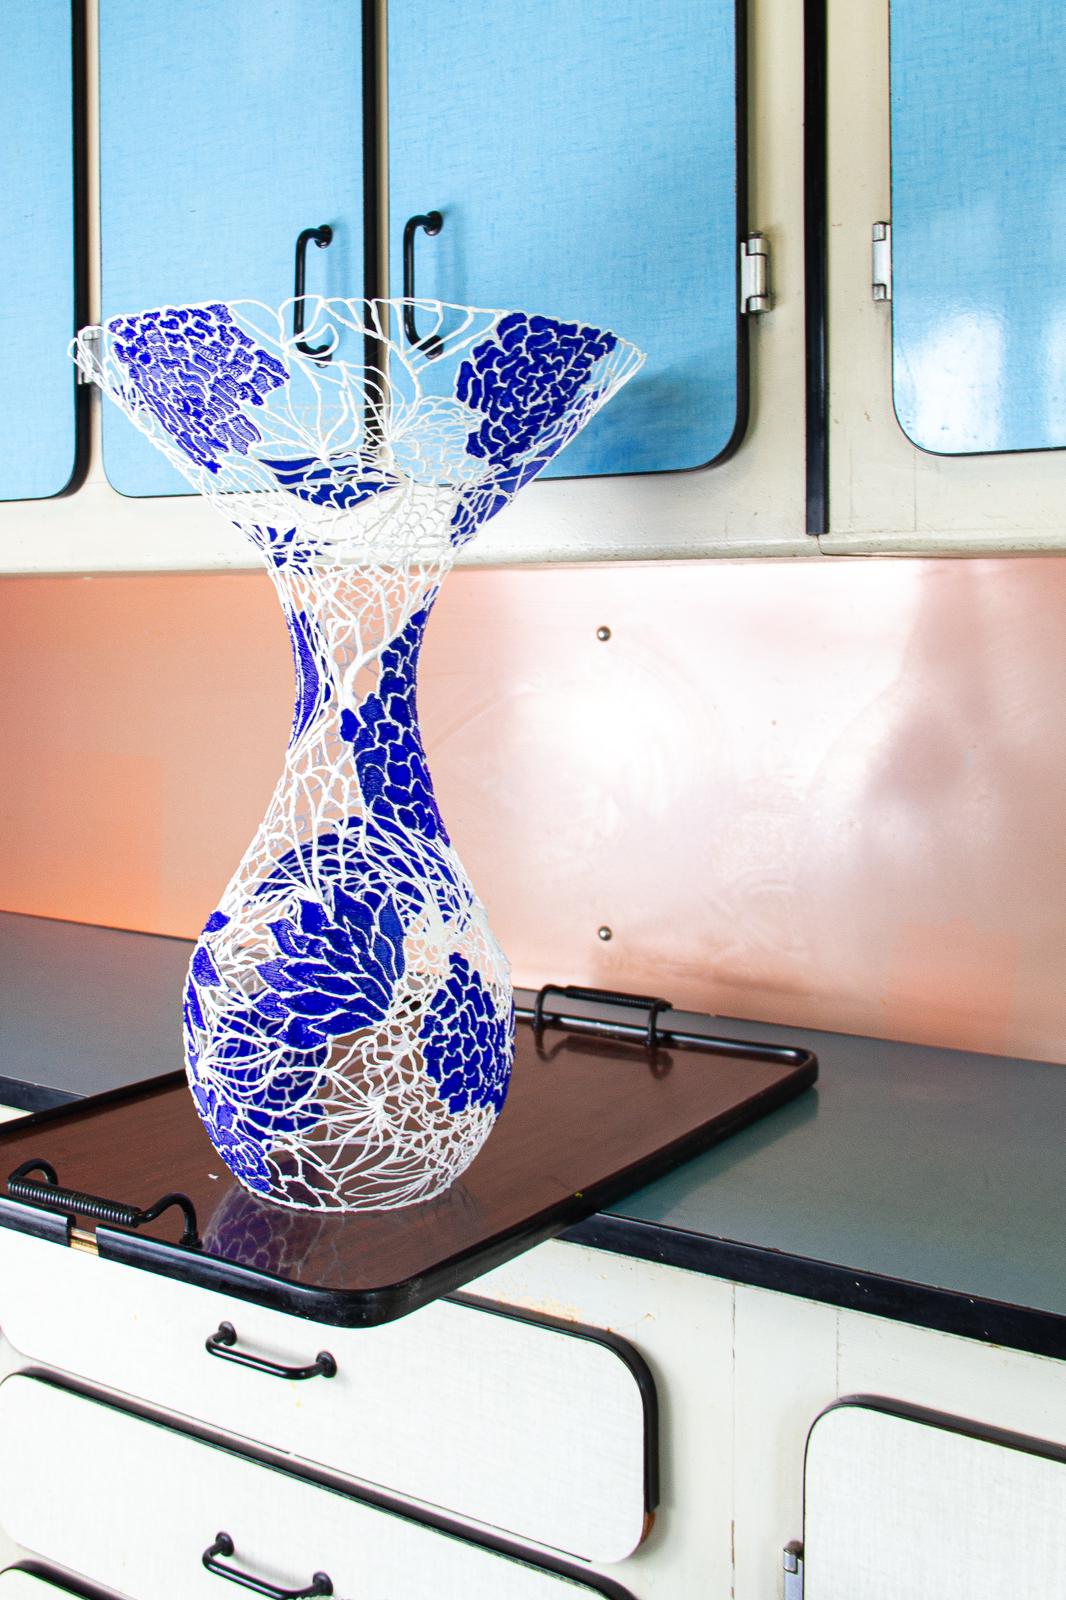 Gallery work - vase Delfts blauw - one piece